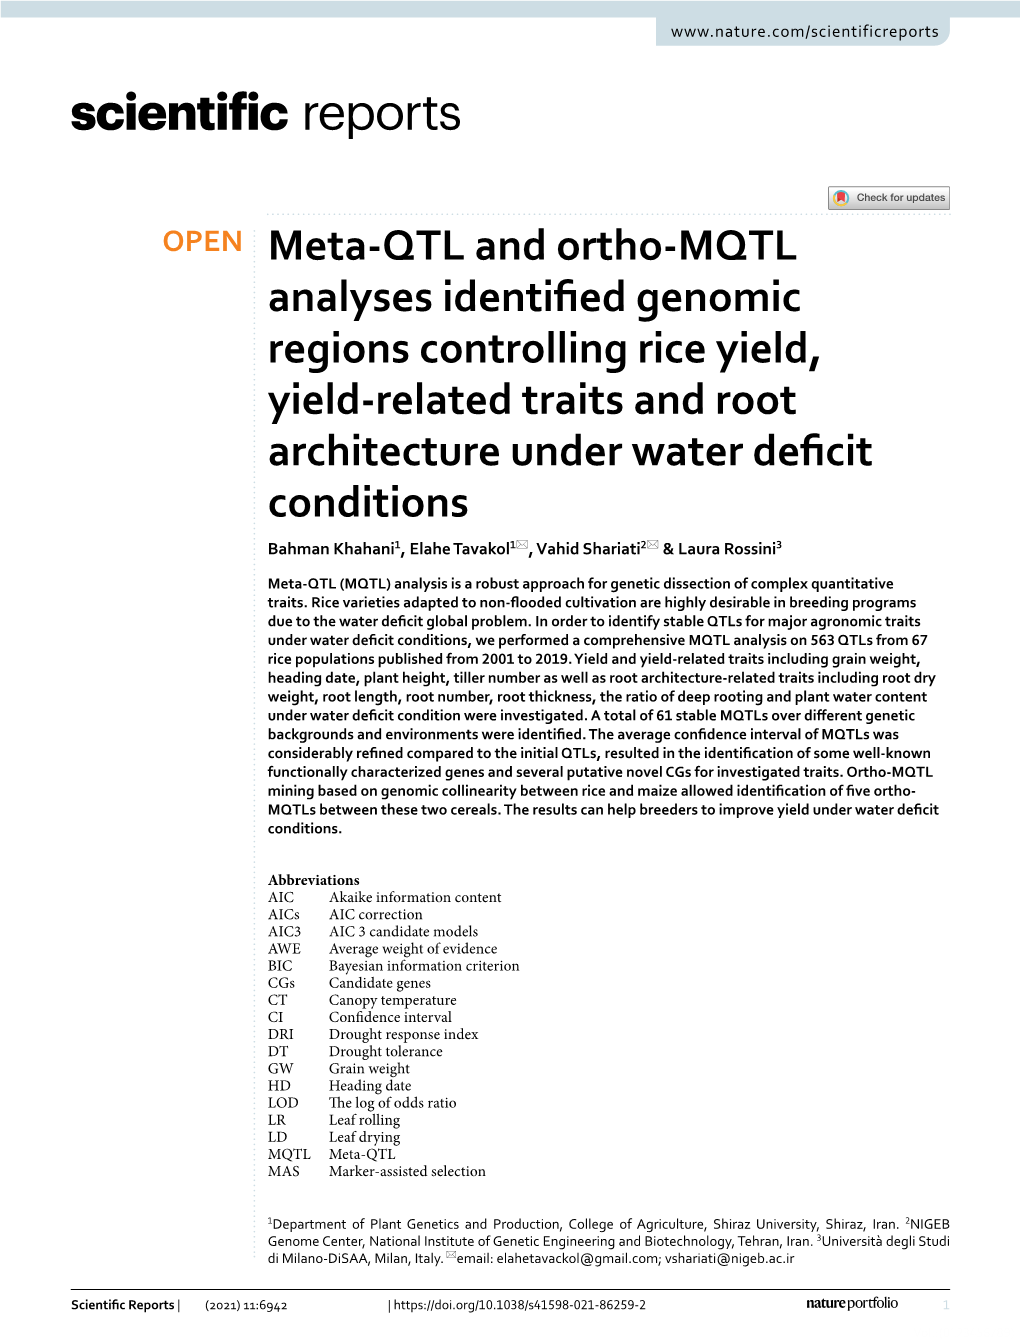 Meta-QTL and Ortho-MQTL Analyses Identified Genomic Regions